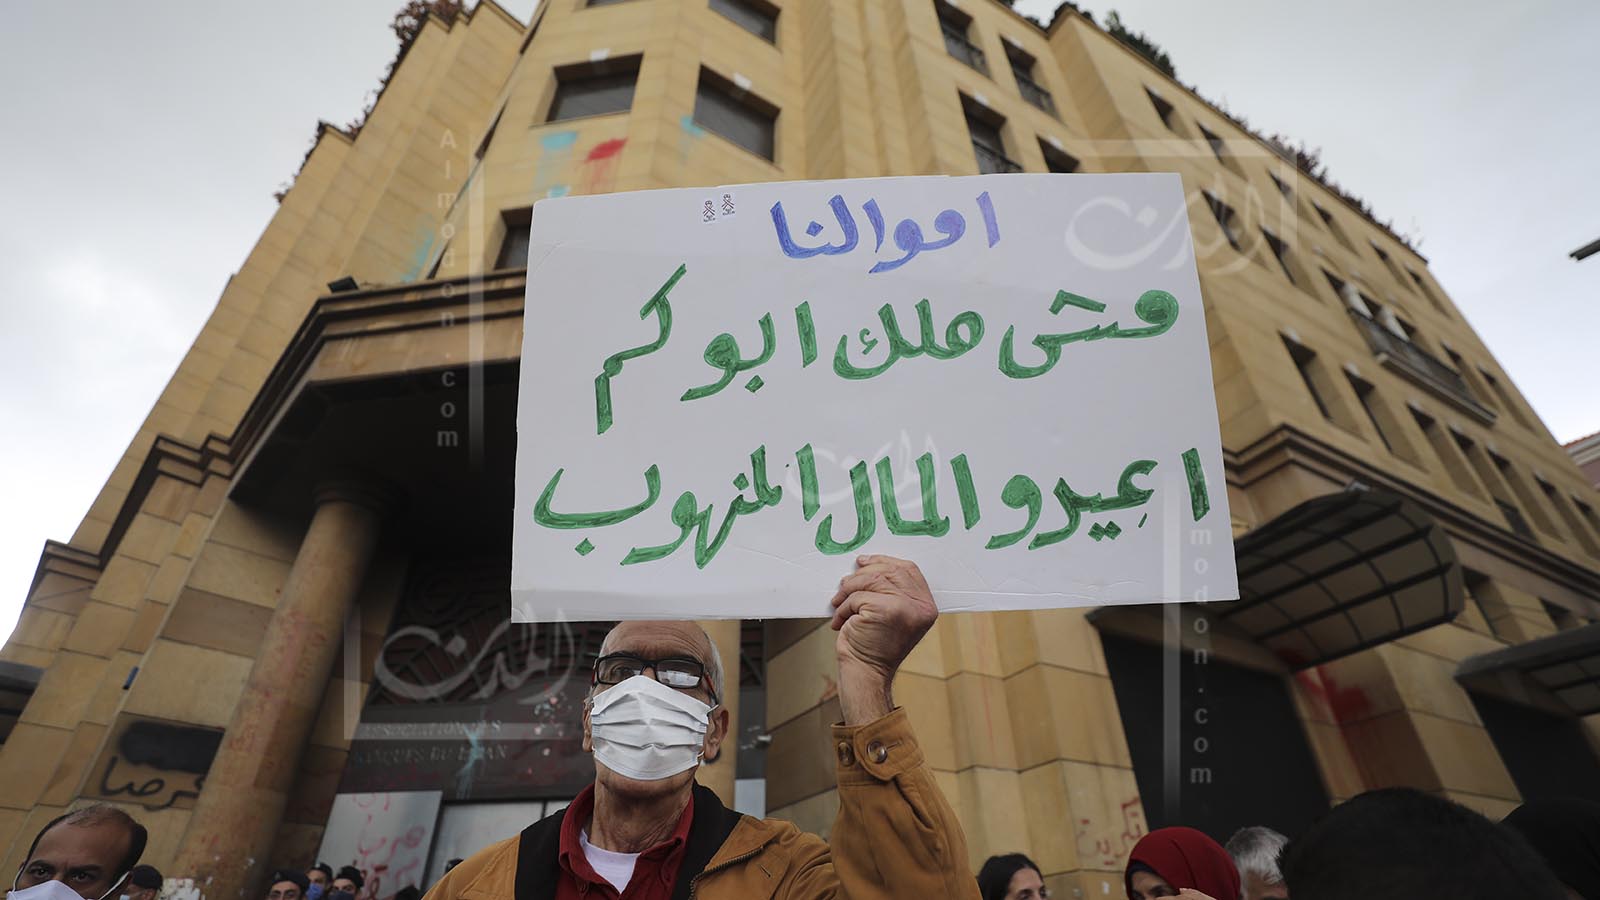 عودة خرافة اللبناني "المزتوت"